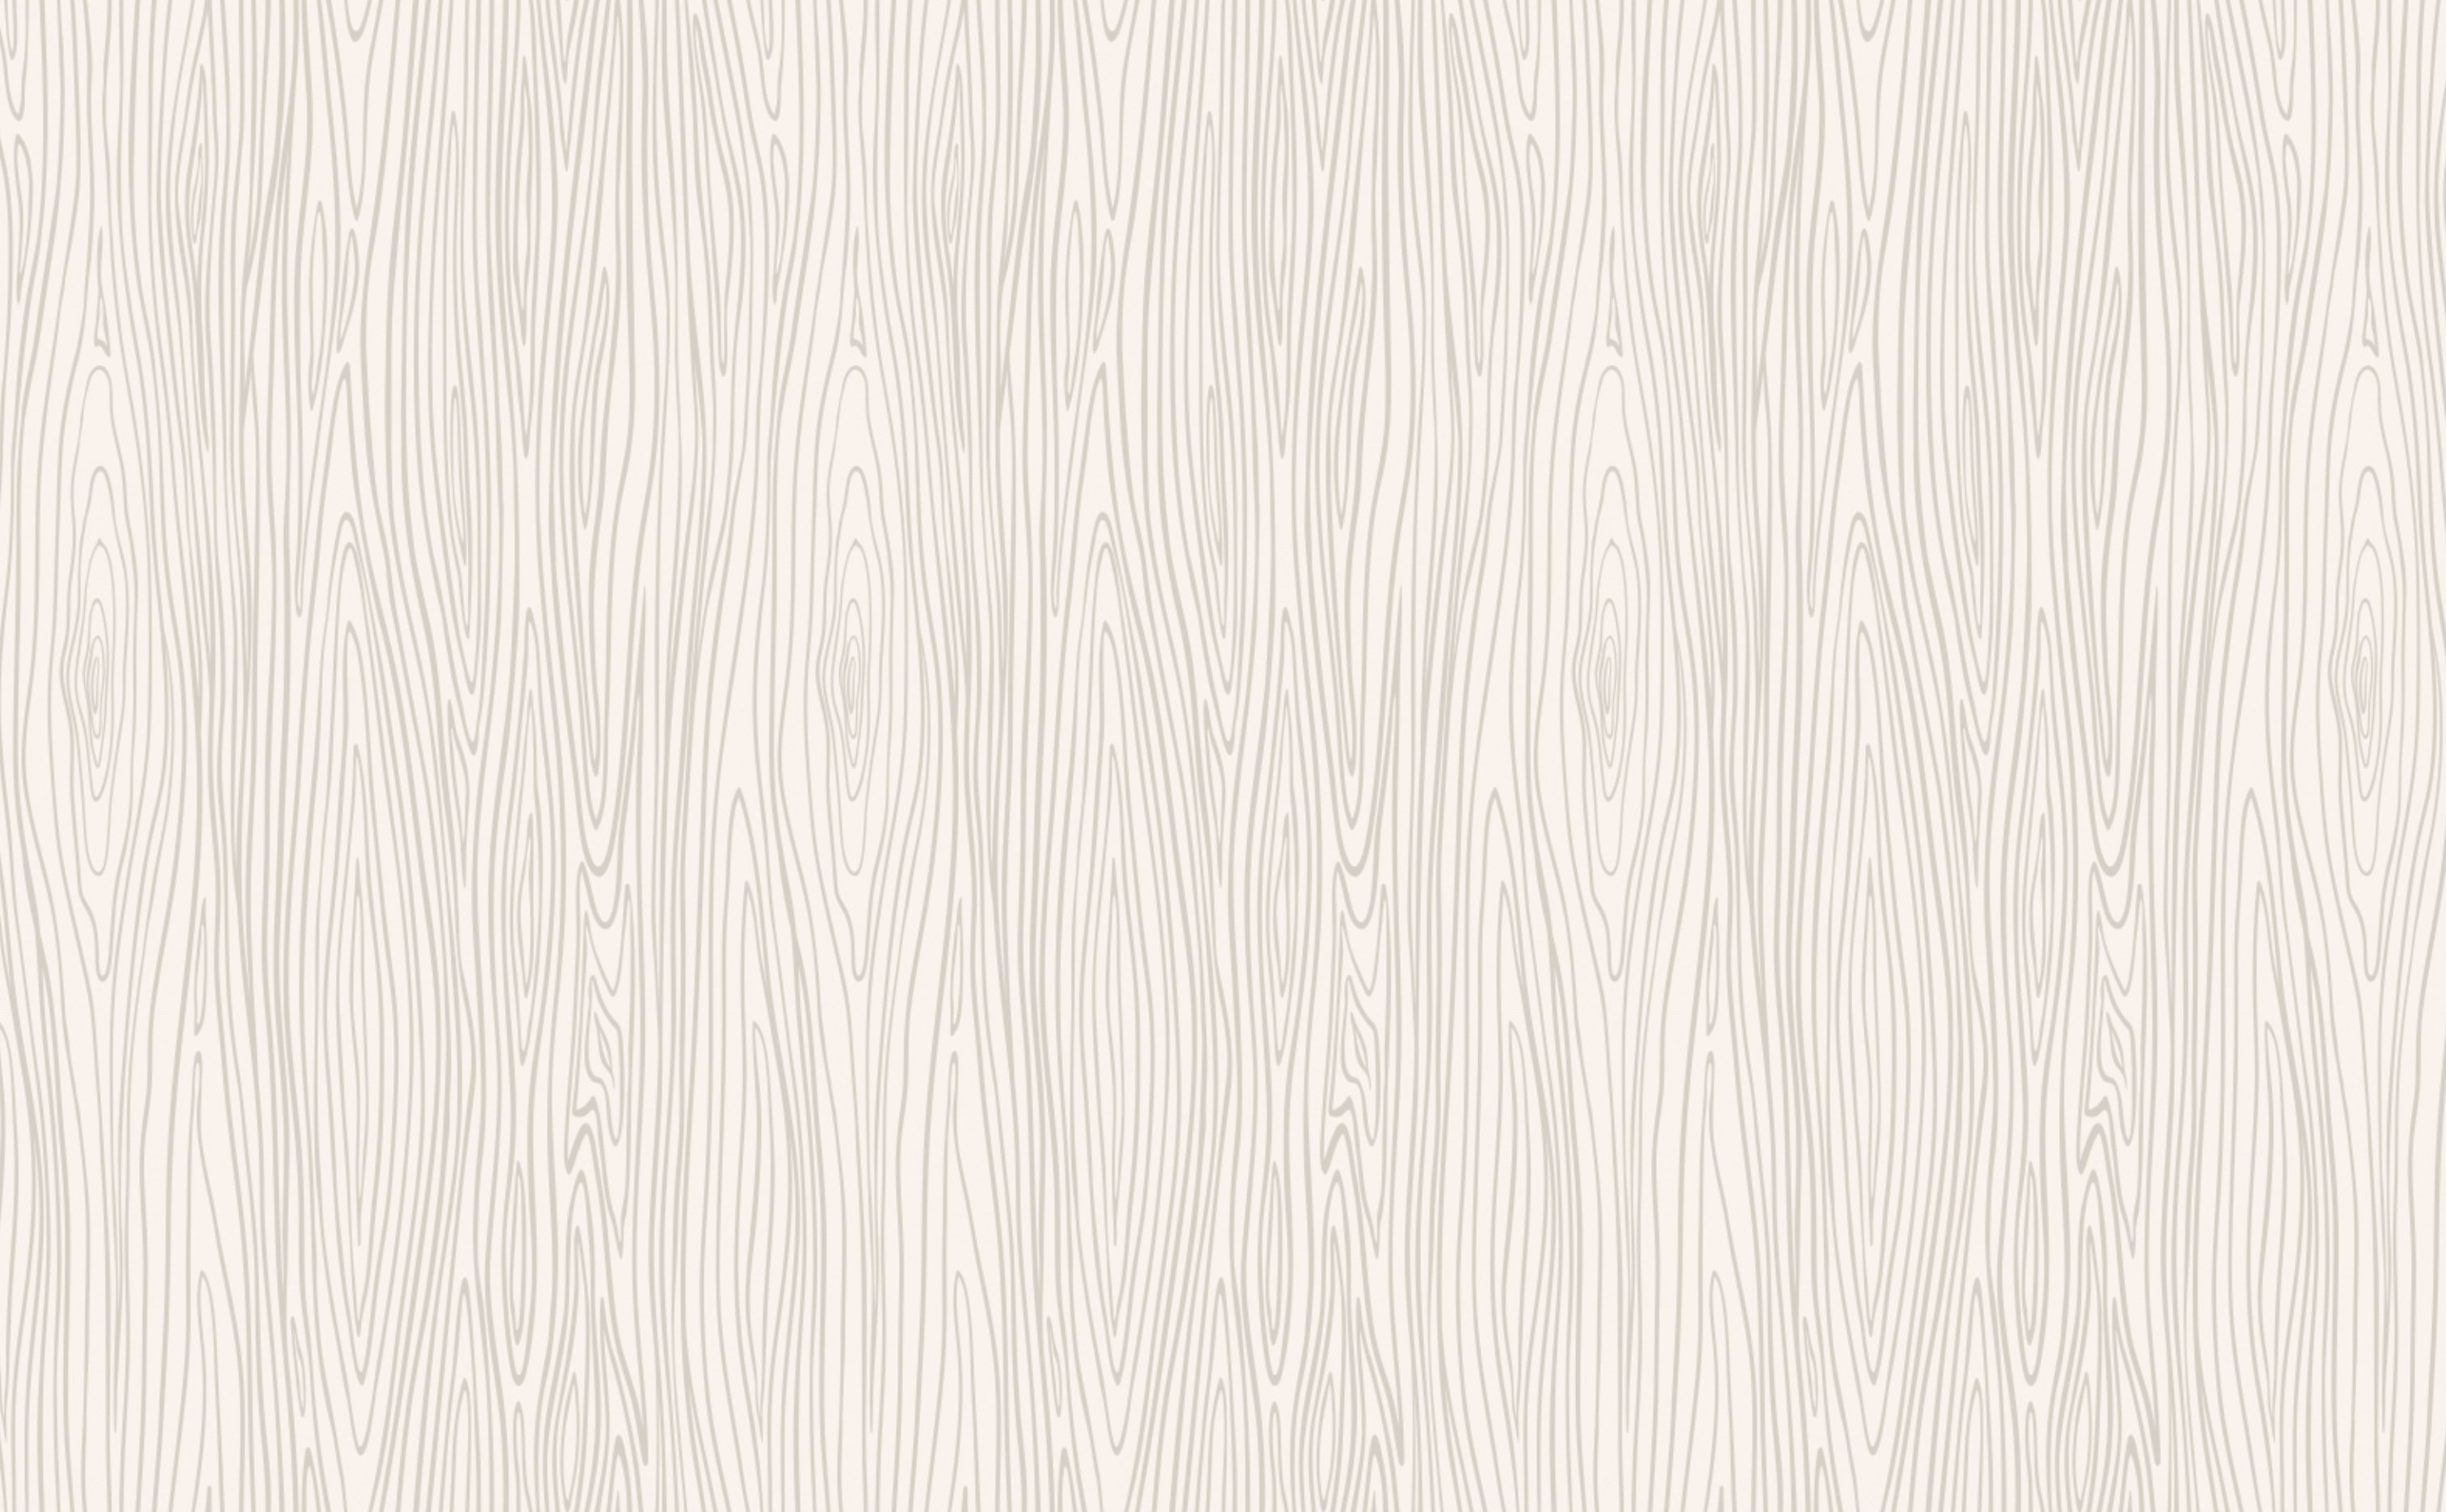 Giấy dán tường họa tiết vân gỗ giả - Làm mới không gian sống của bạn với giấy dán tường họa tiết tinh tế và độc đáo. Với vân gỗ giả, bạn có thể tạo ra một không gian sống hiện đại, đầy phong cách và đẳng cấp.